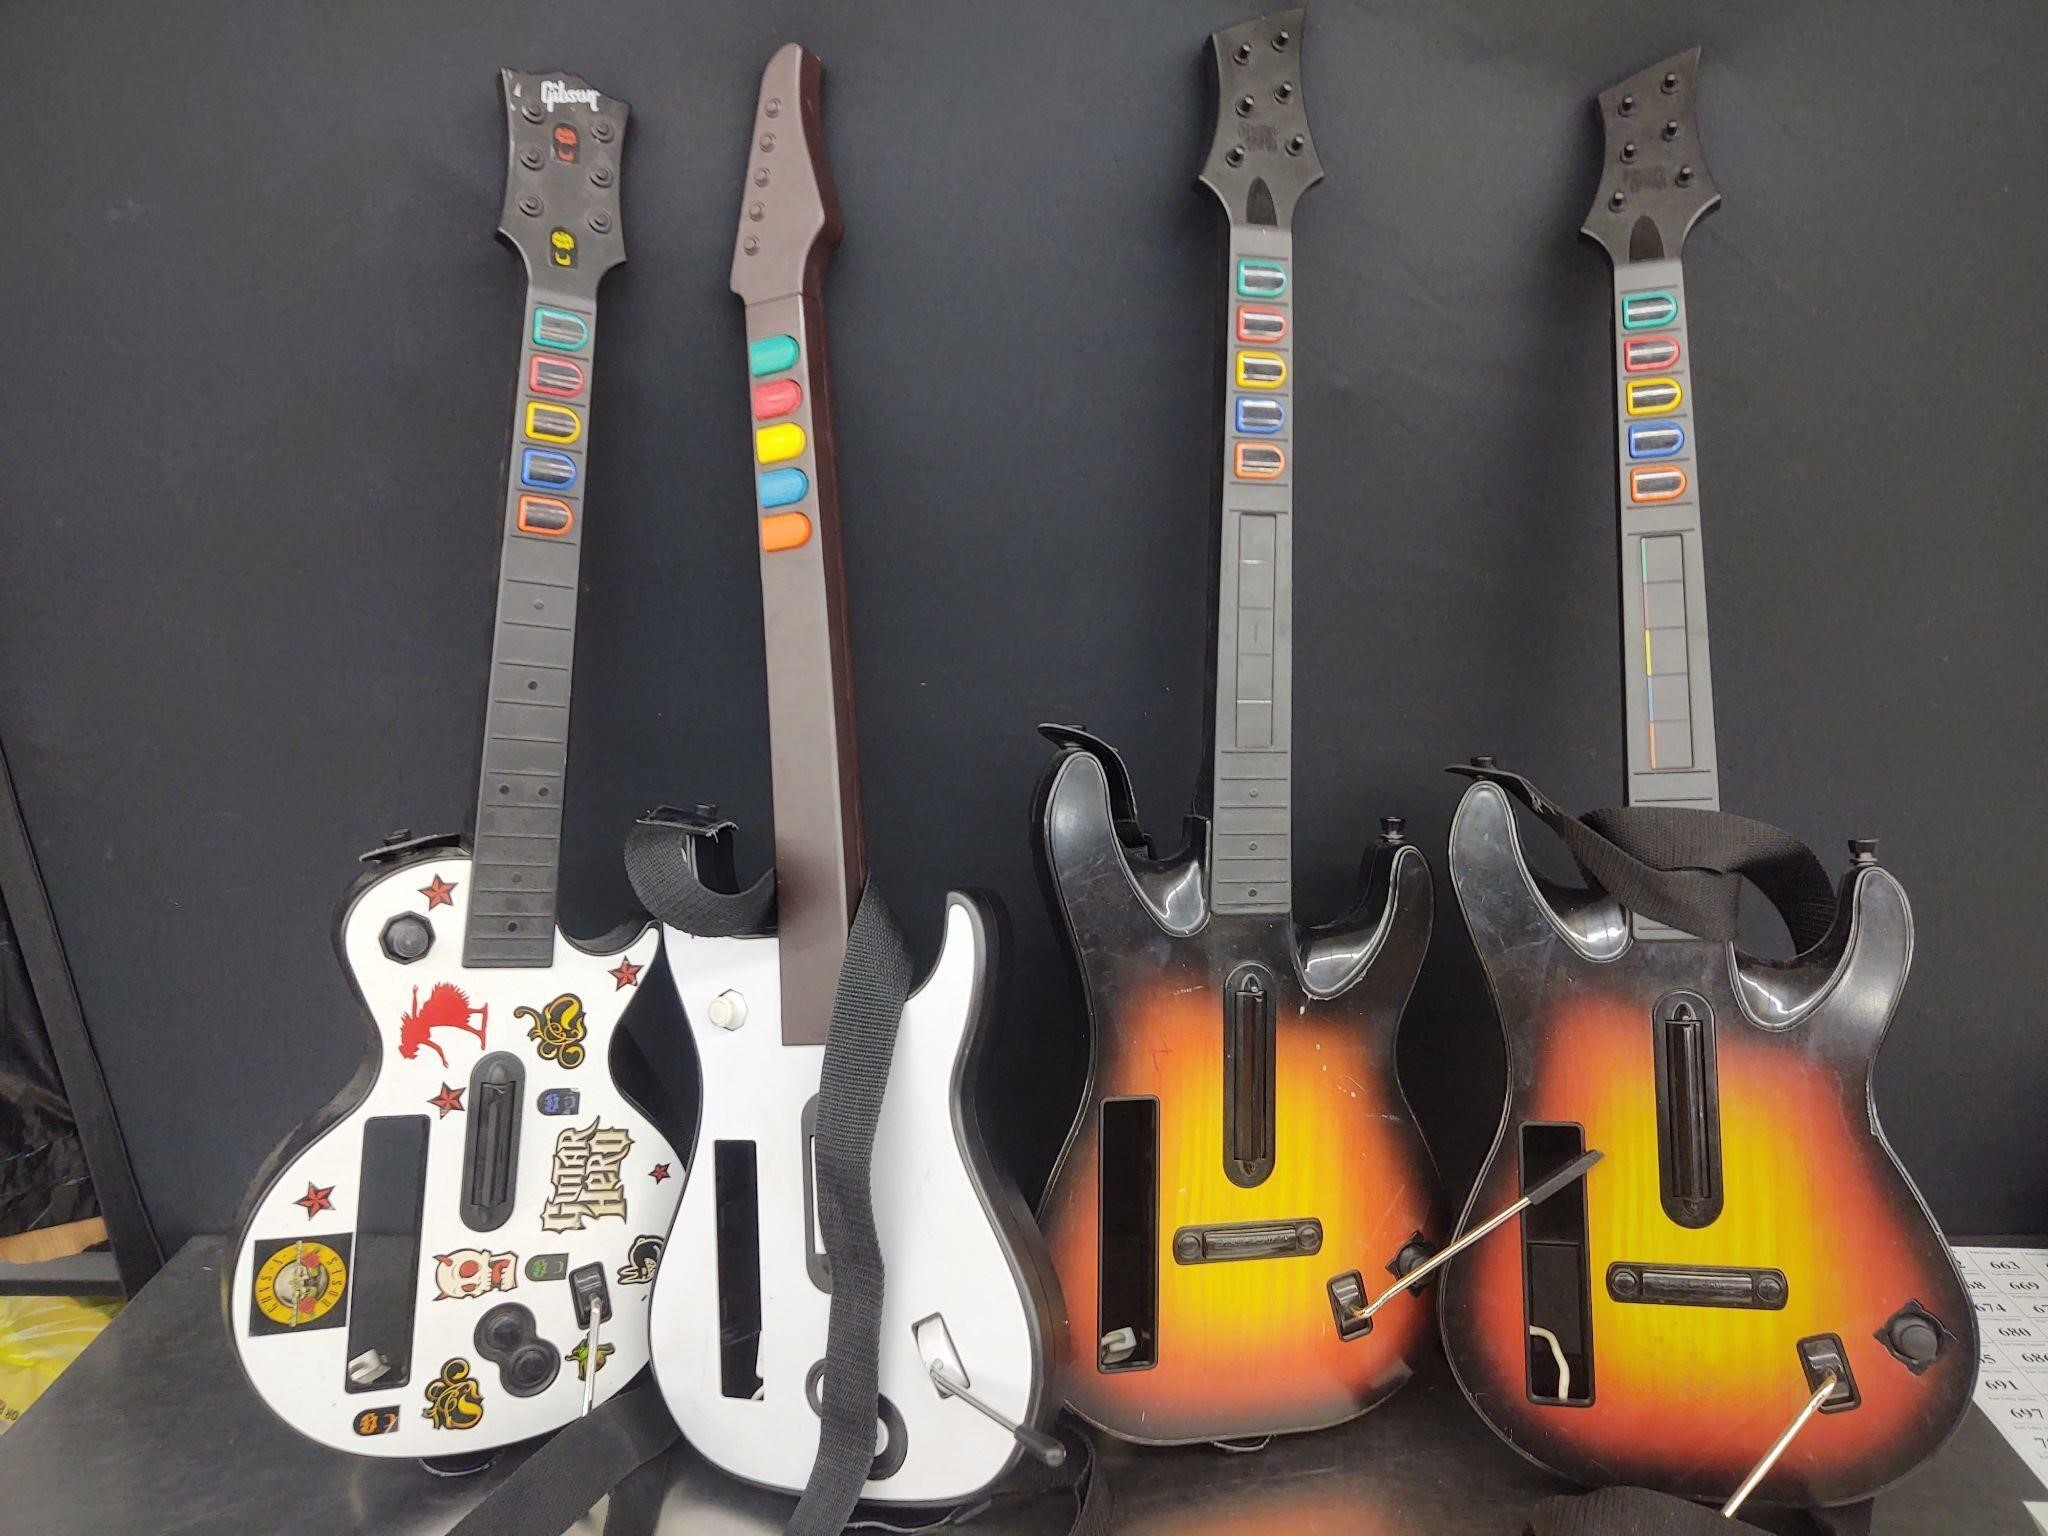 Guitar Hero Guitars for Wii